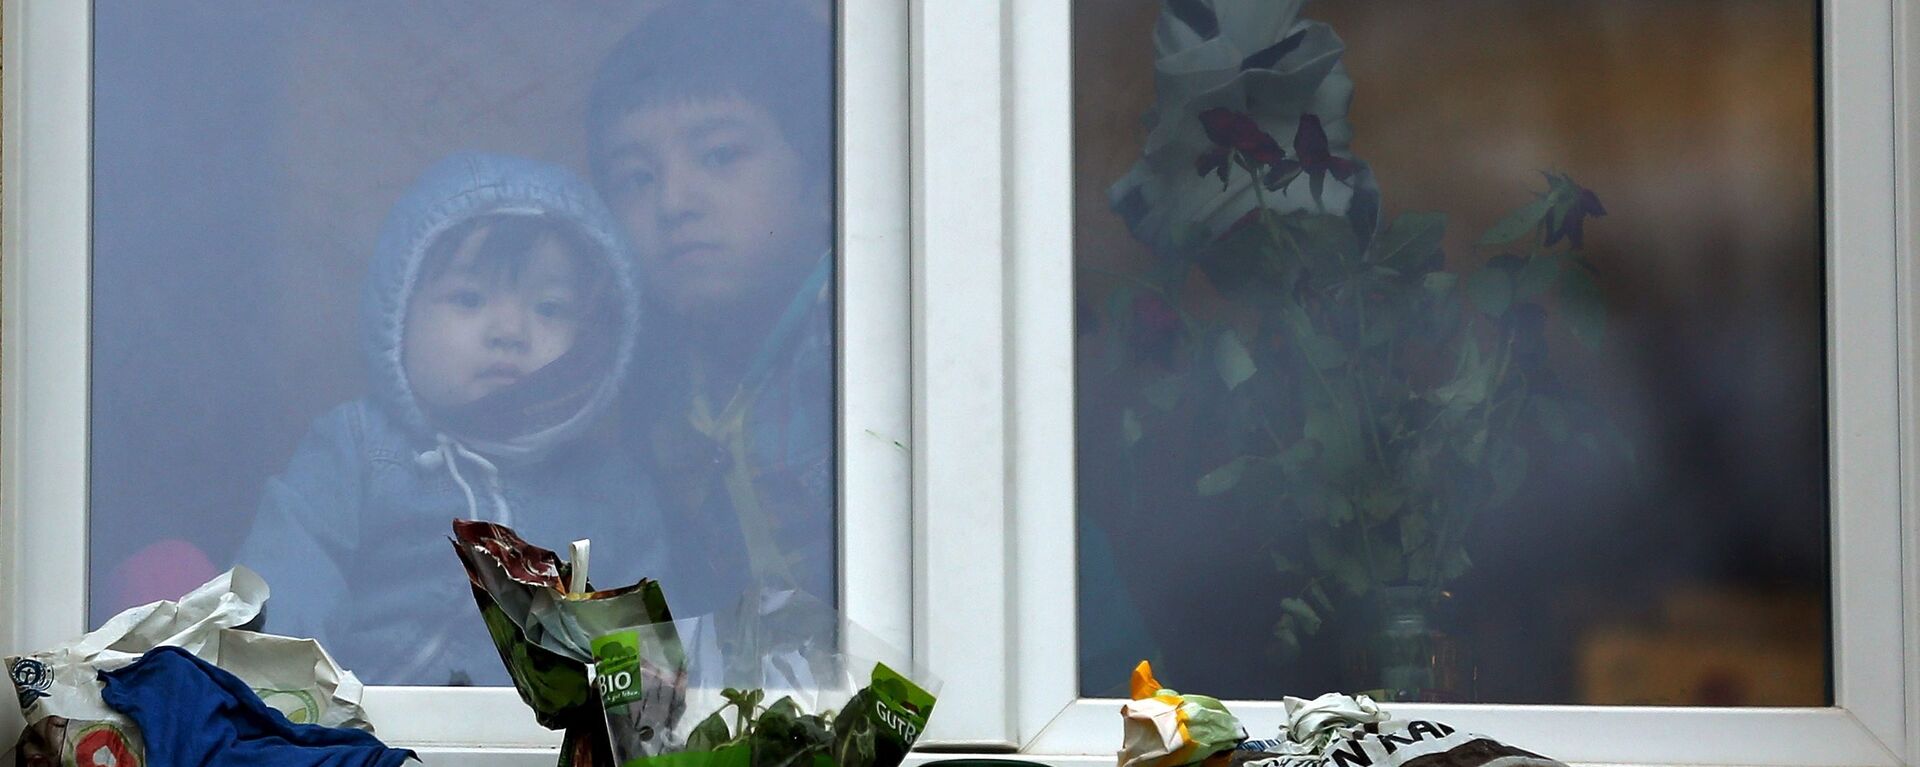 Дети-беженцы смотрят из окна - Sputnik Латвия, 1920, 23.03.2016